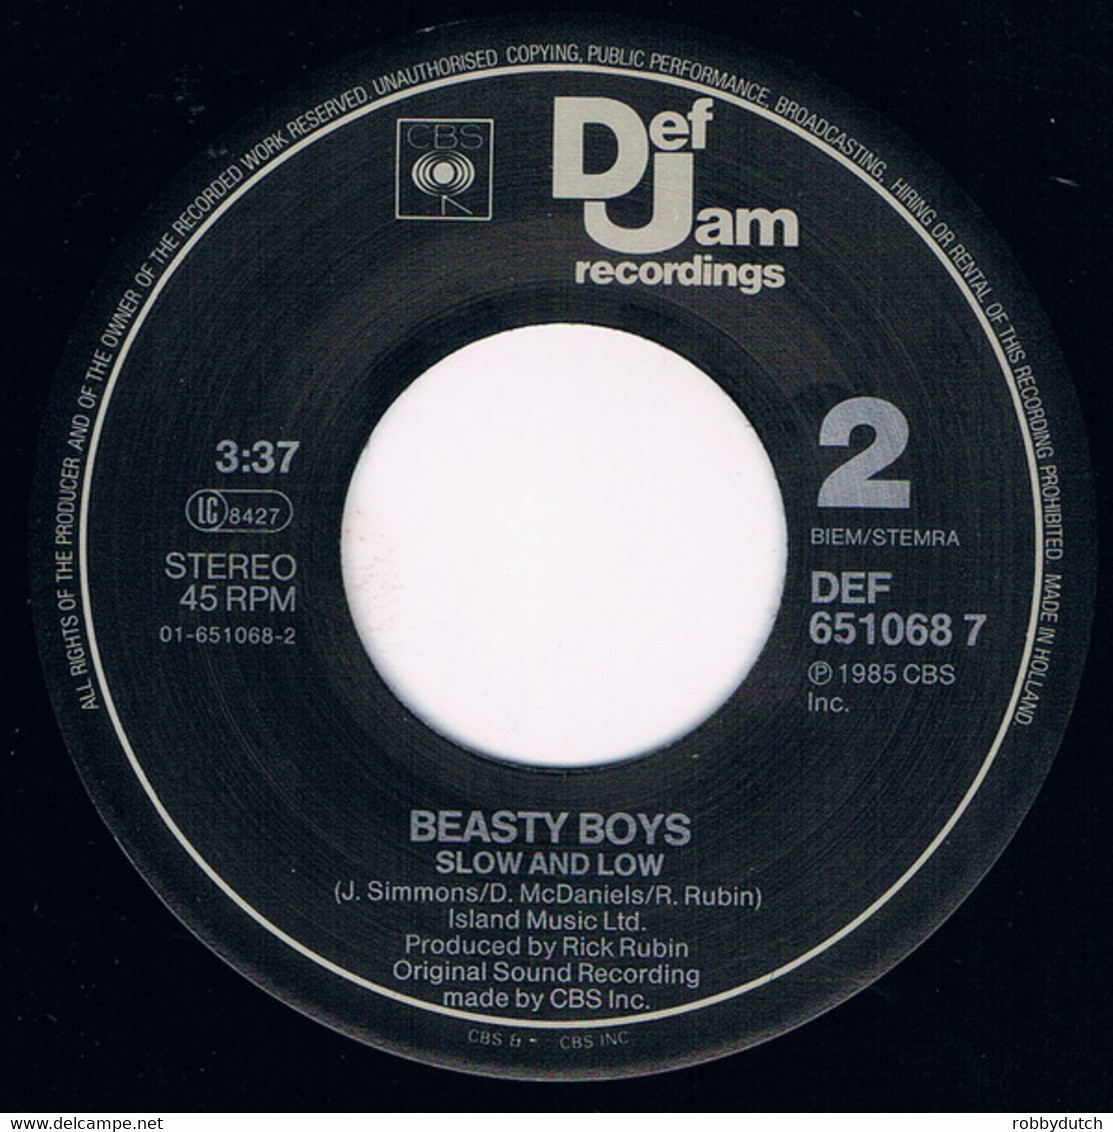 * 7" *  BEASTIE BOYS - SHE'S ON IT (Europe 1985 MISPRINT!!) - Rap & Hip Hop